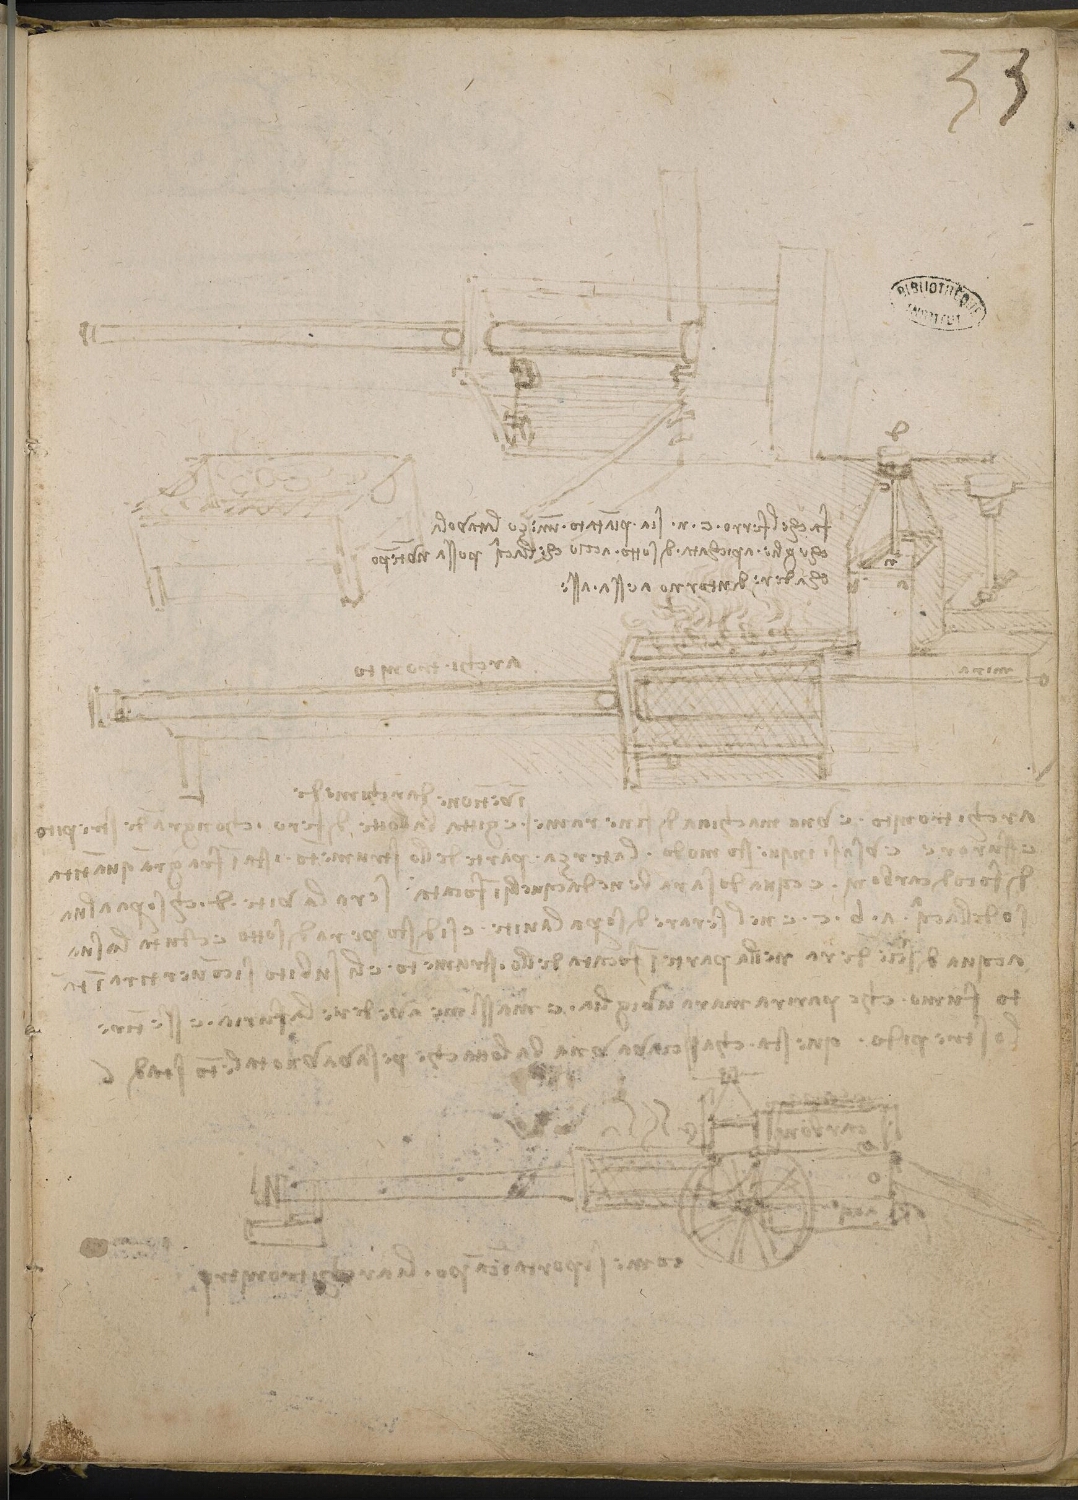 Ms 2173 (Manuscrit B), f. 33r : « Architronitro » ou architonnerre (canon à vapeur).